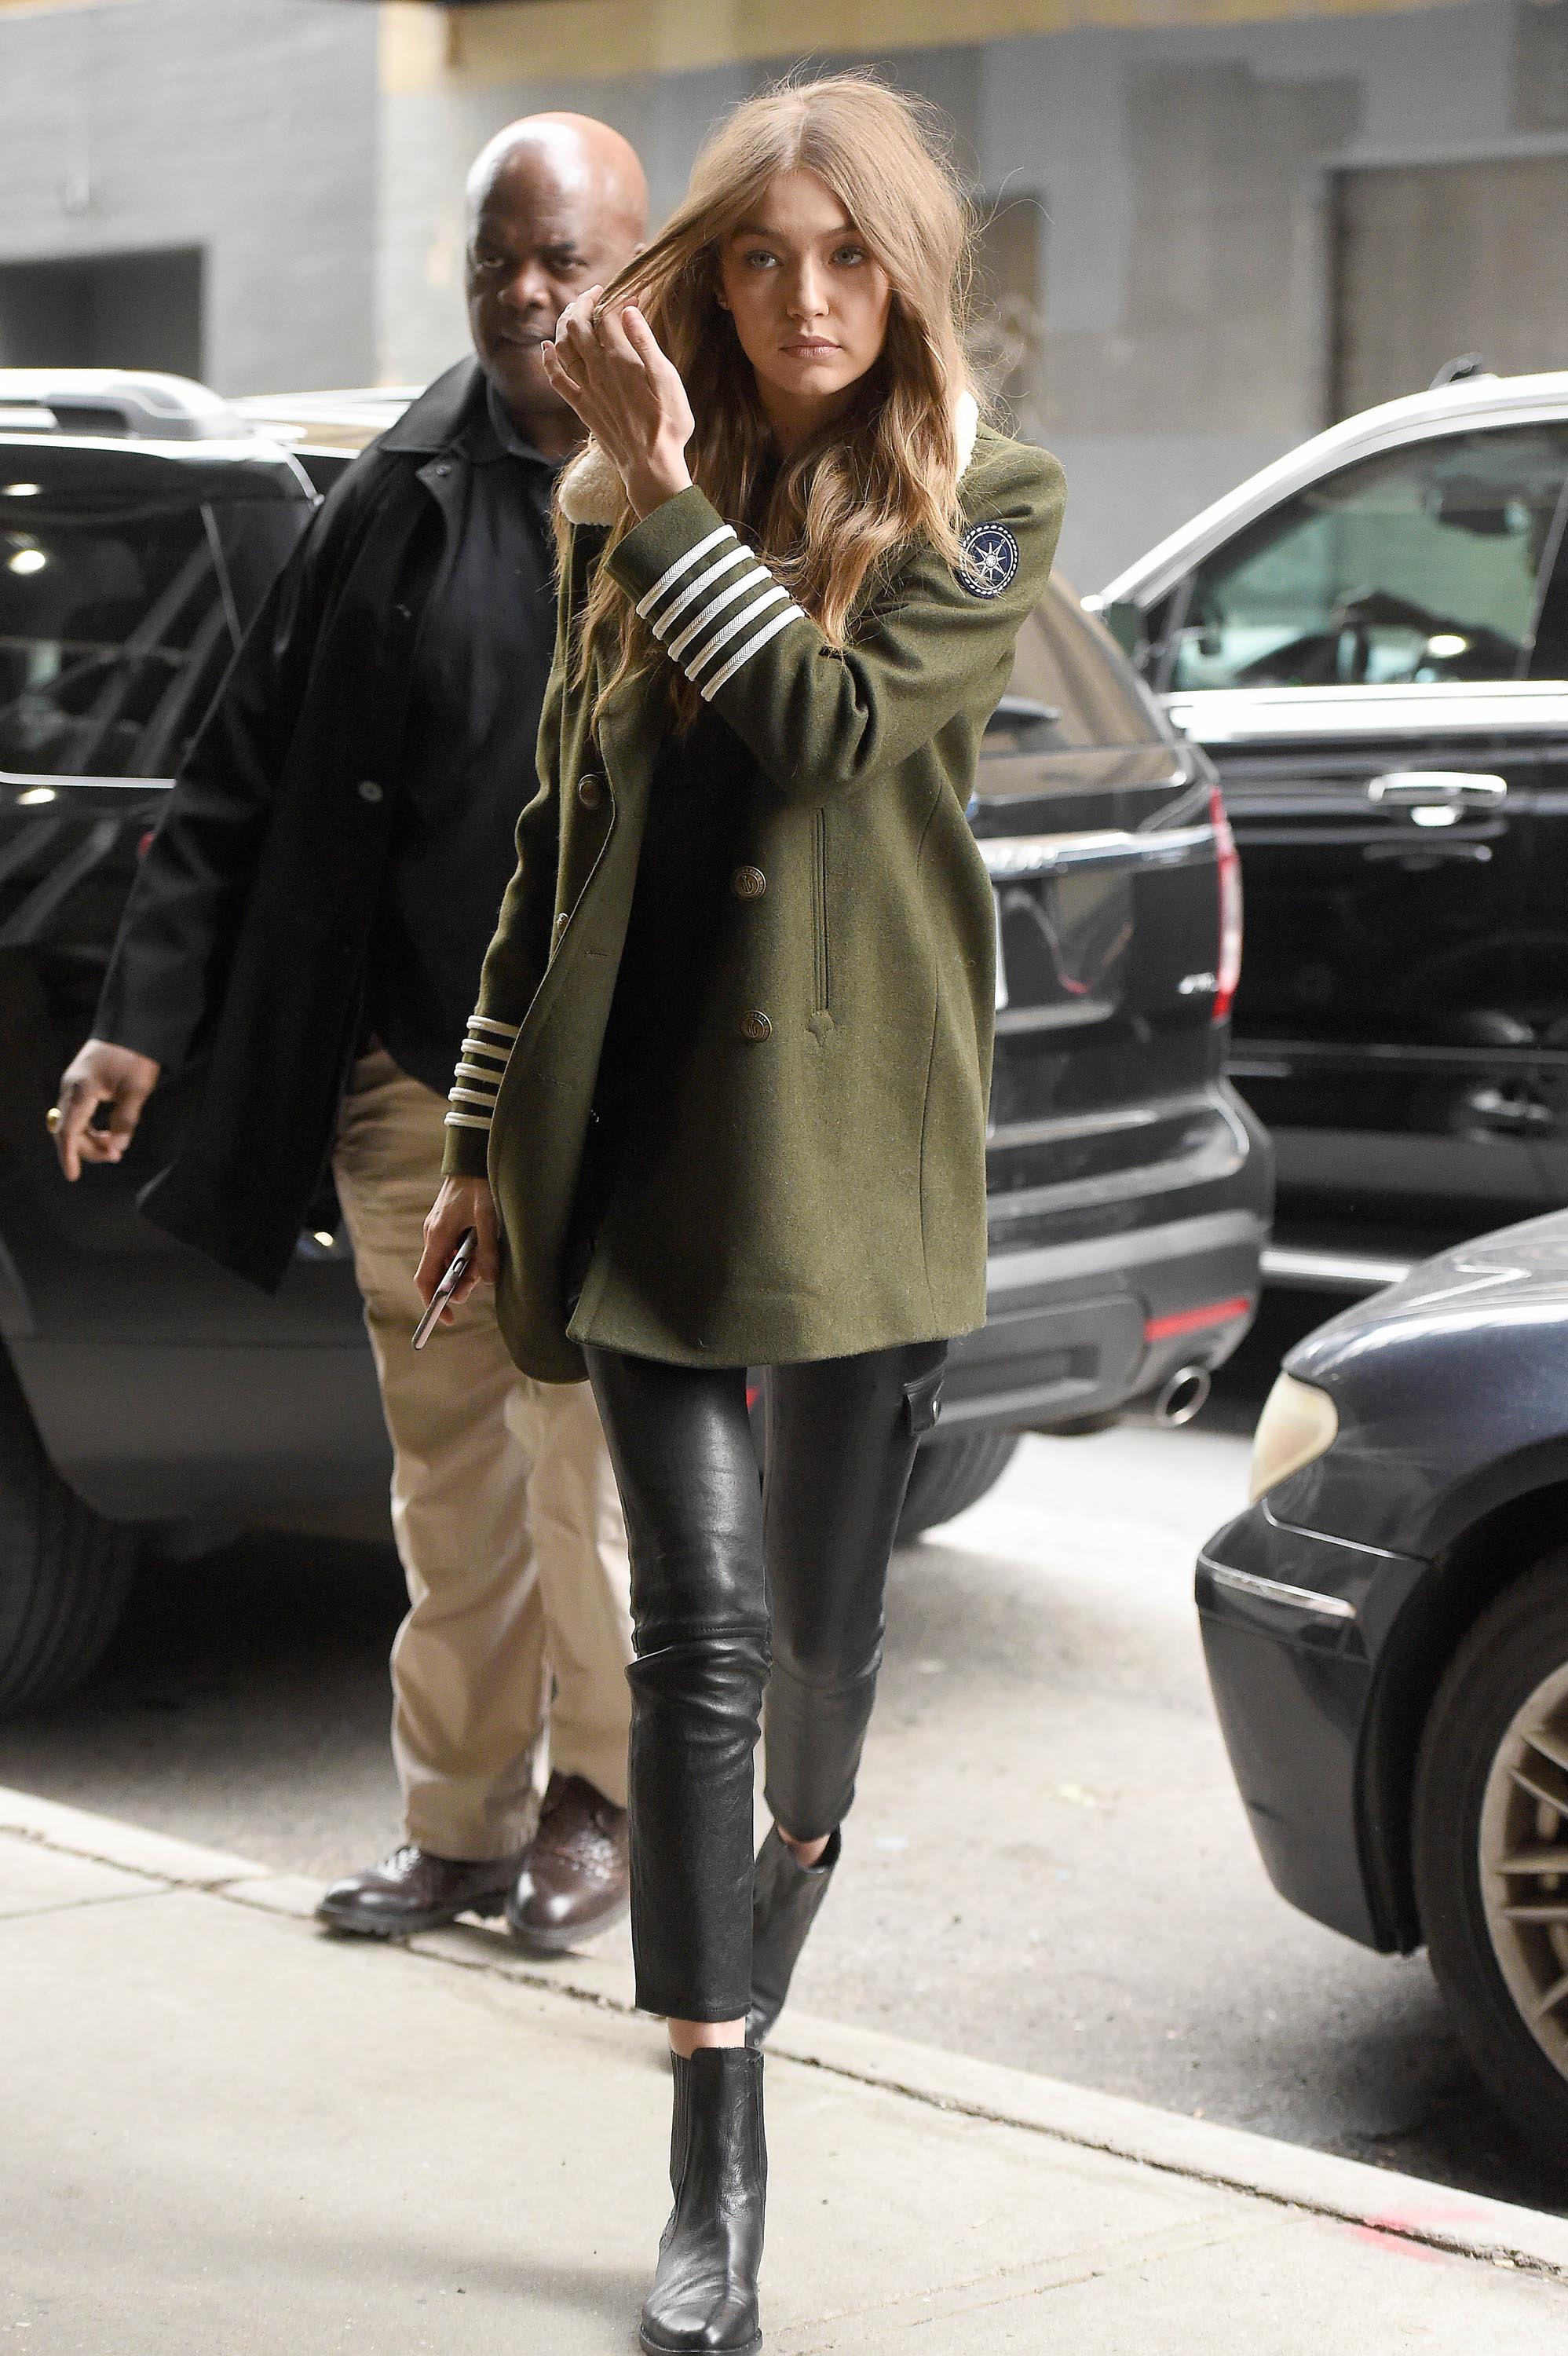 Gigi Hadid is seen in NYC